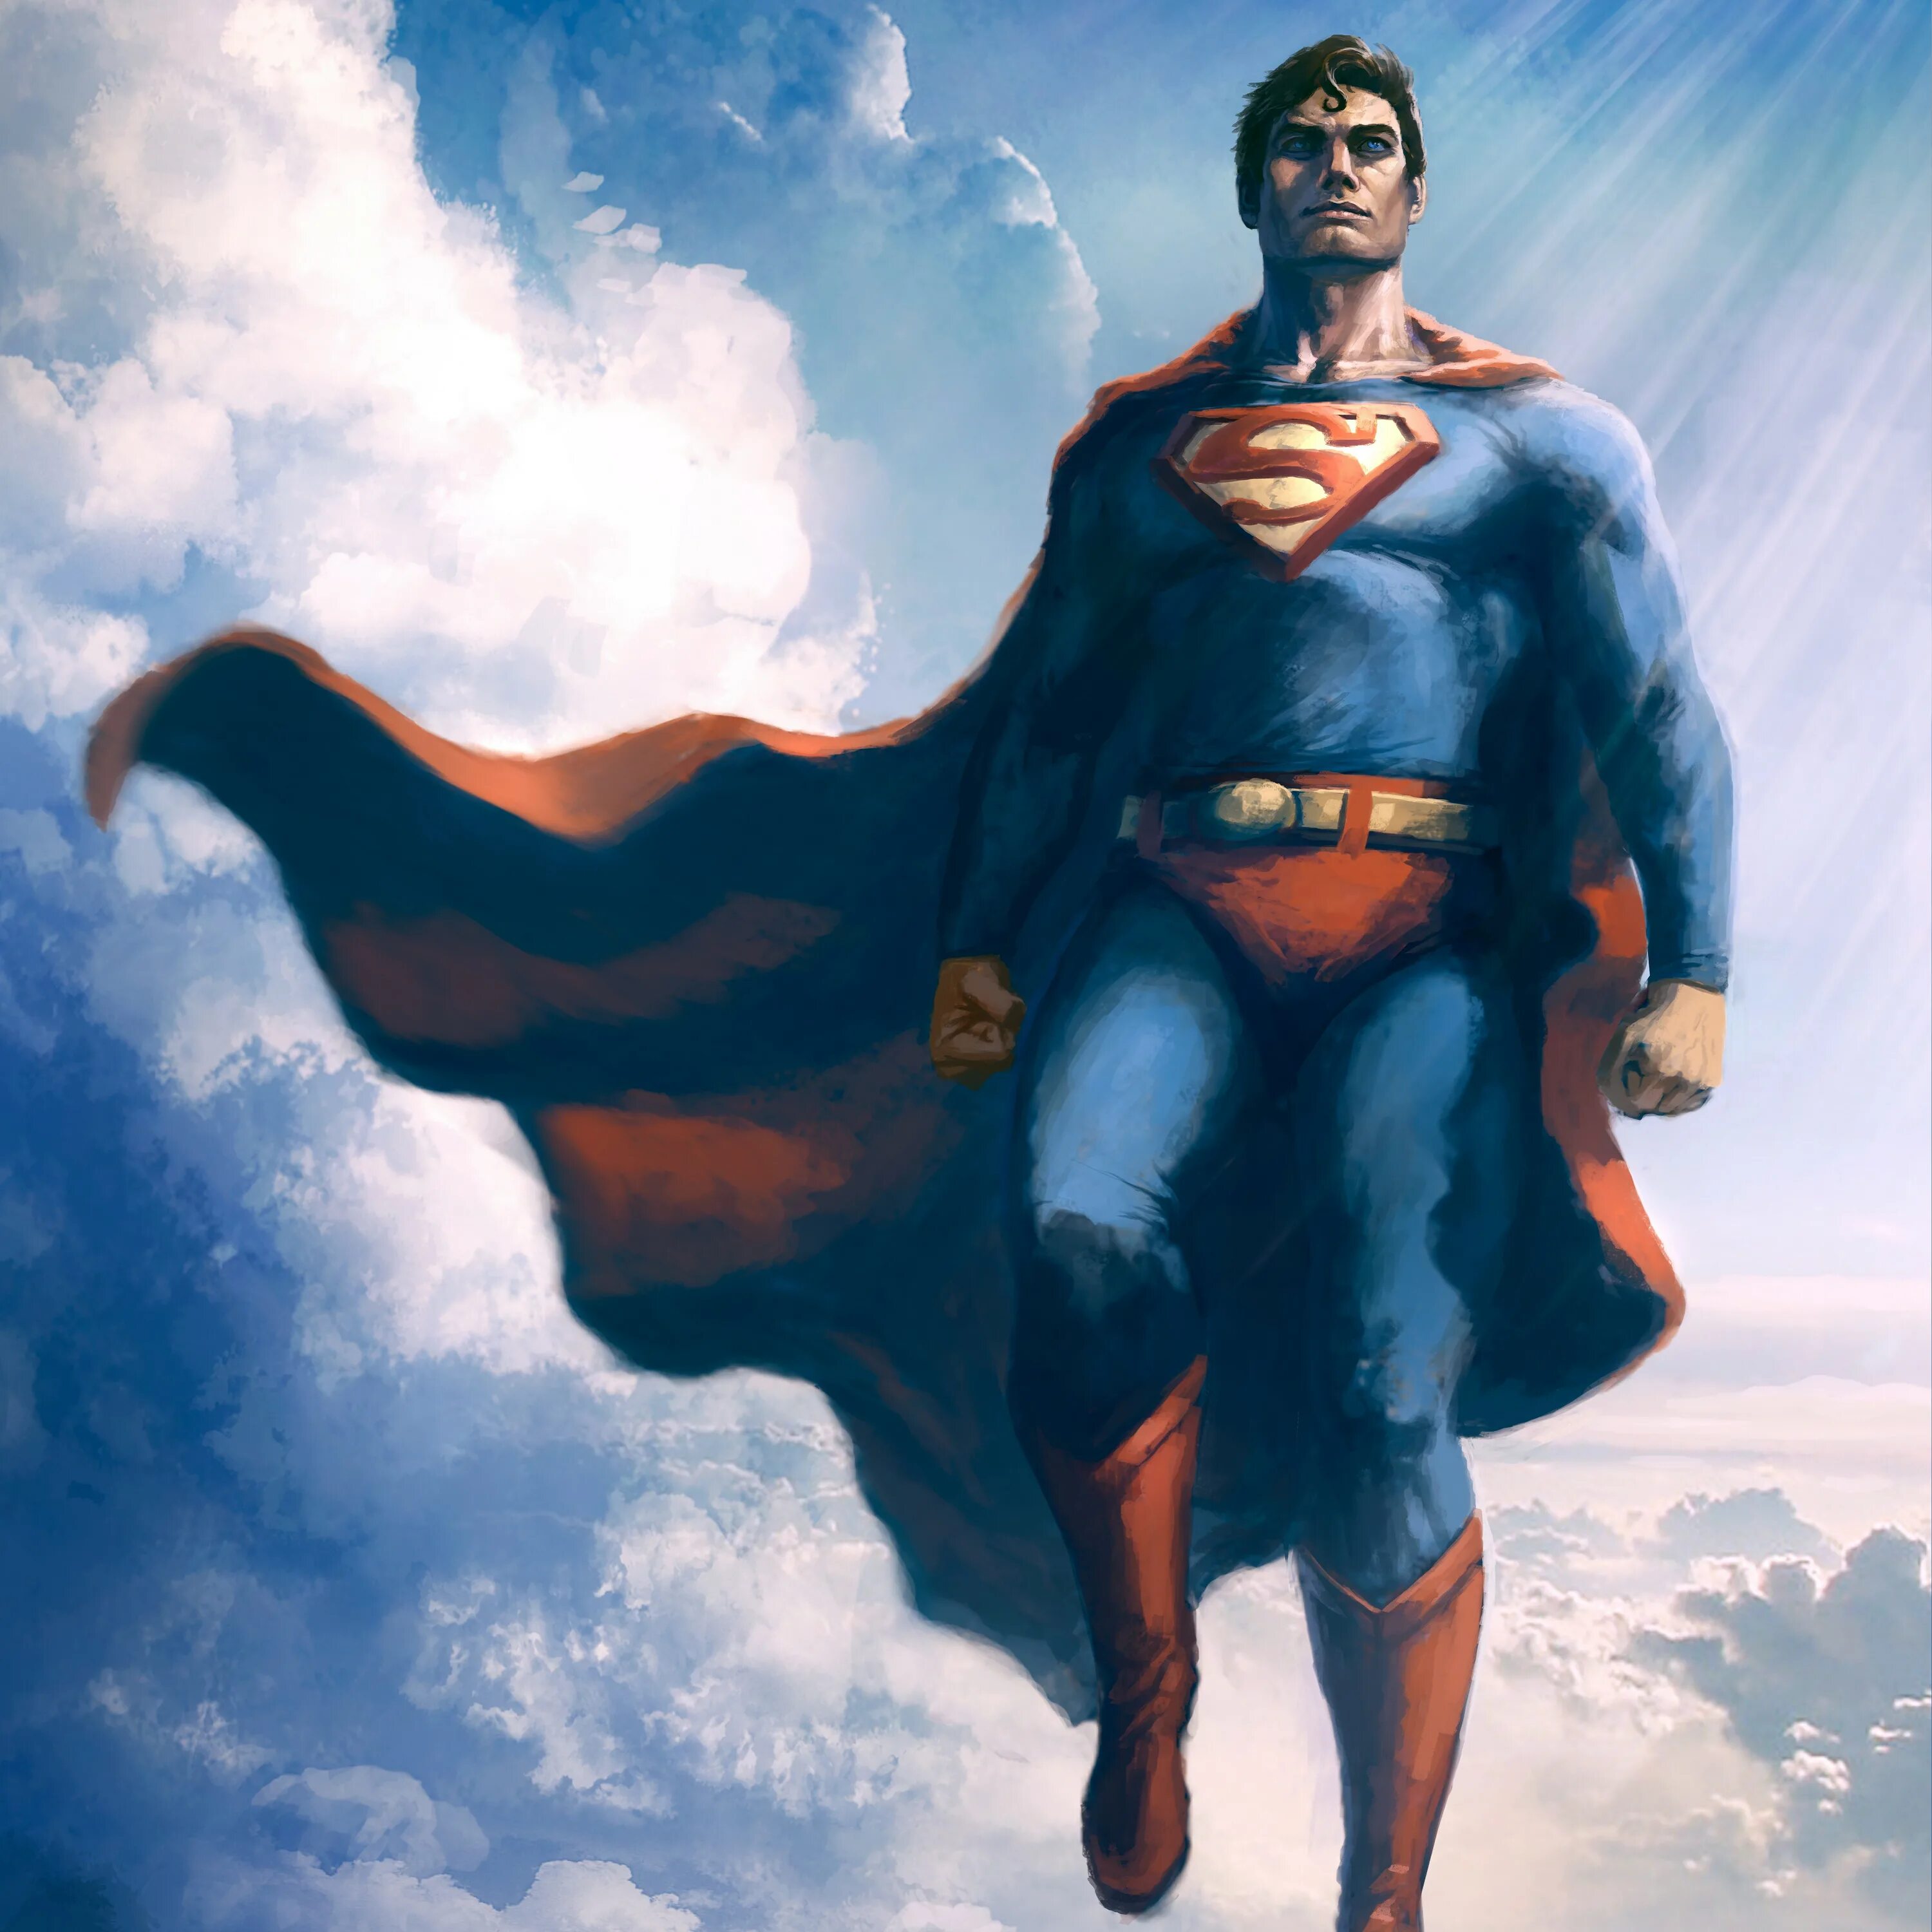 Кларк Кент Супермен. Супермен Макс Флейшер. Брюс Уэйн (Бэтмен), Кларк Кент (Супермен). Супермен 60х.